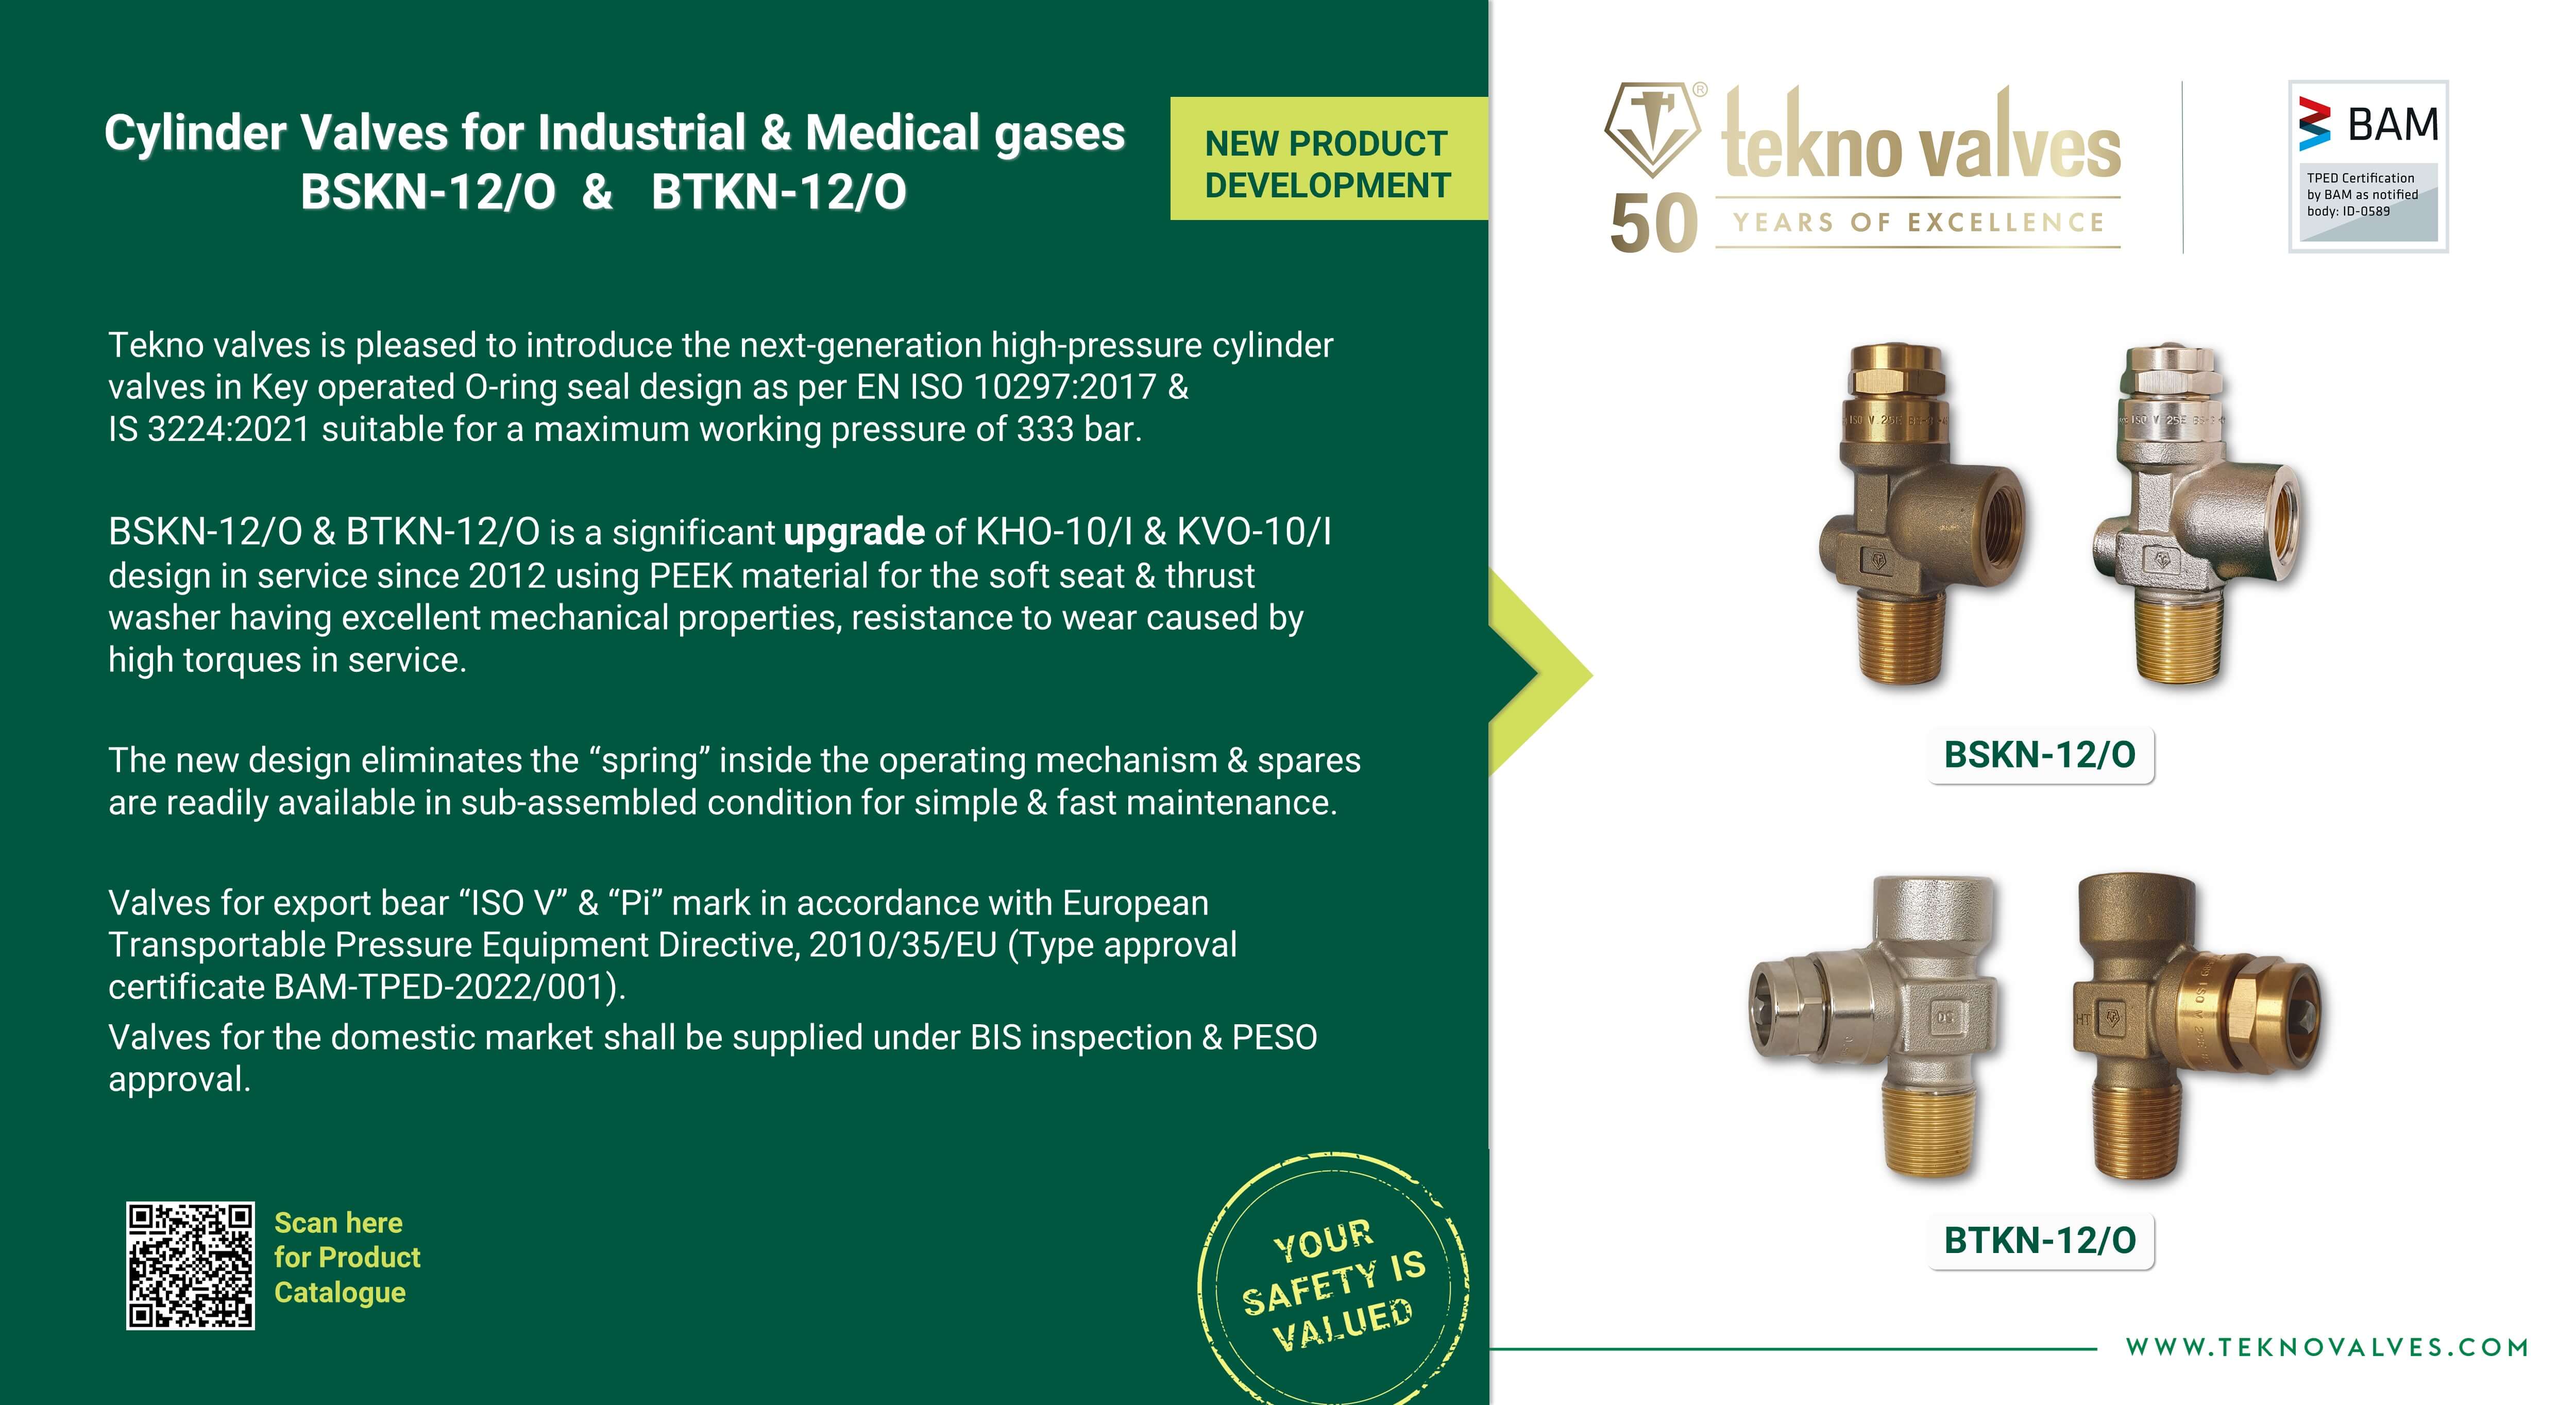 Tekno Valves introduces BSKN-12/O & BTKN-12/O for Industrial & Medical gases